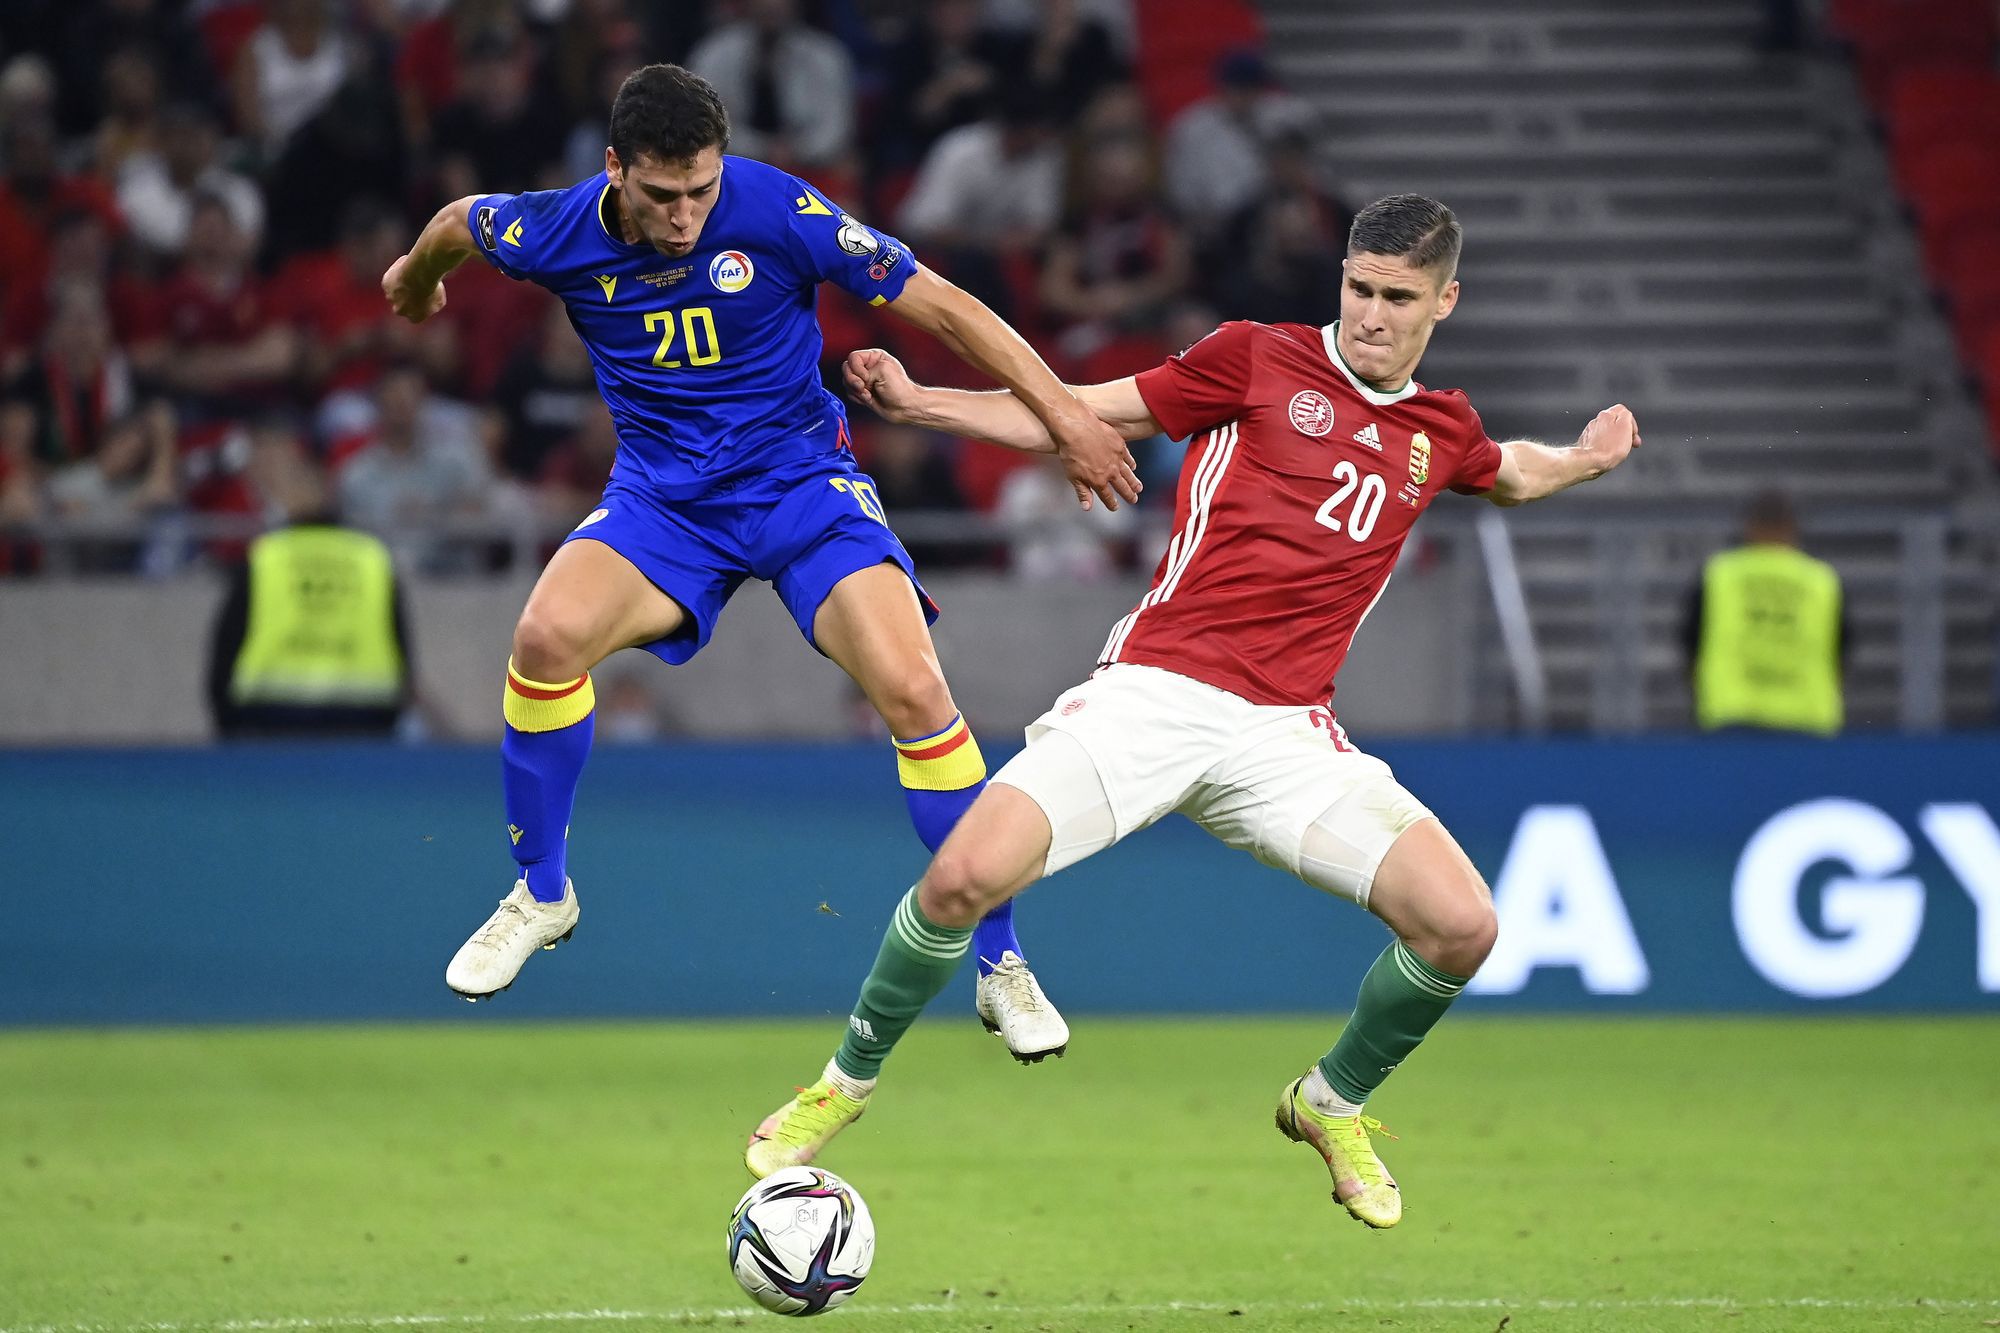 Sallai Roland és az andorrai Max Llovera a labdarúgó világbajnoki selejtezők 6. fordulójában játszott Magyarország - Andorra mérkőzésen a Puskás Arénában /Fotó: MTI/Kovács Tamás